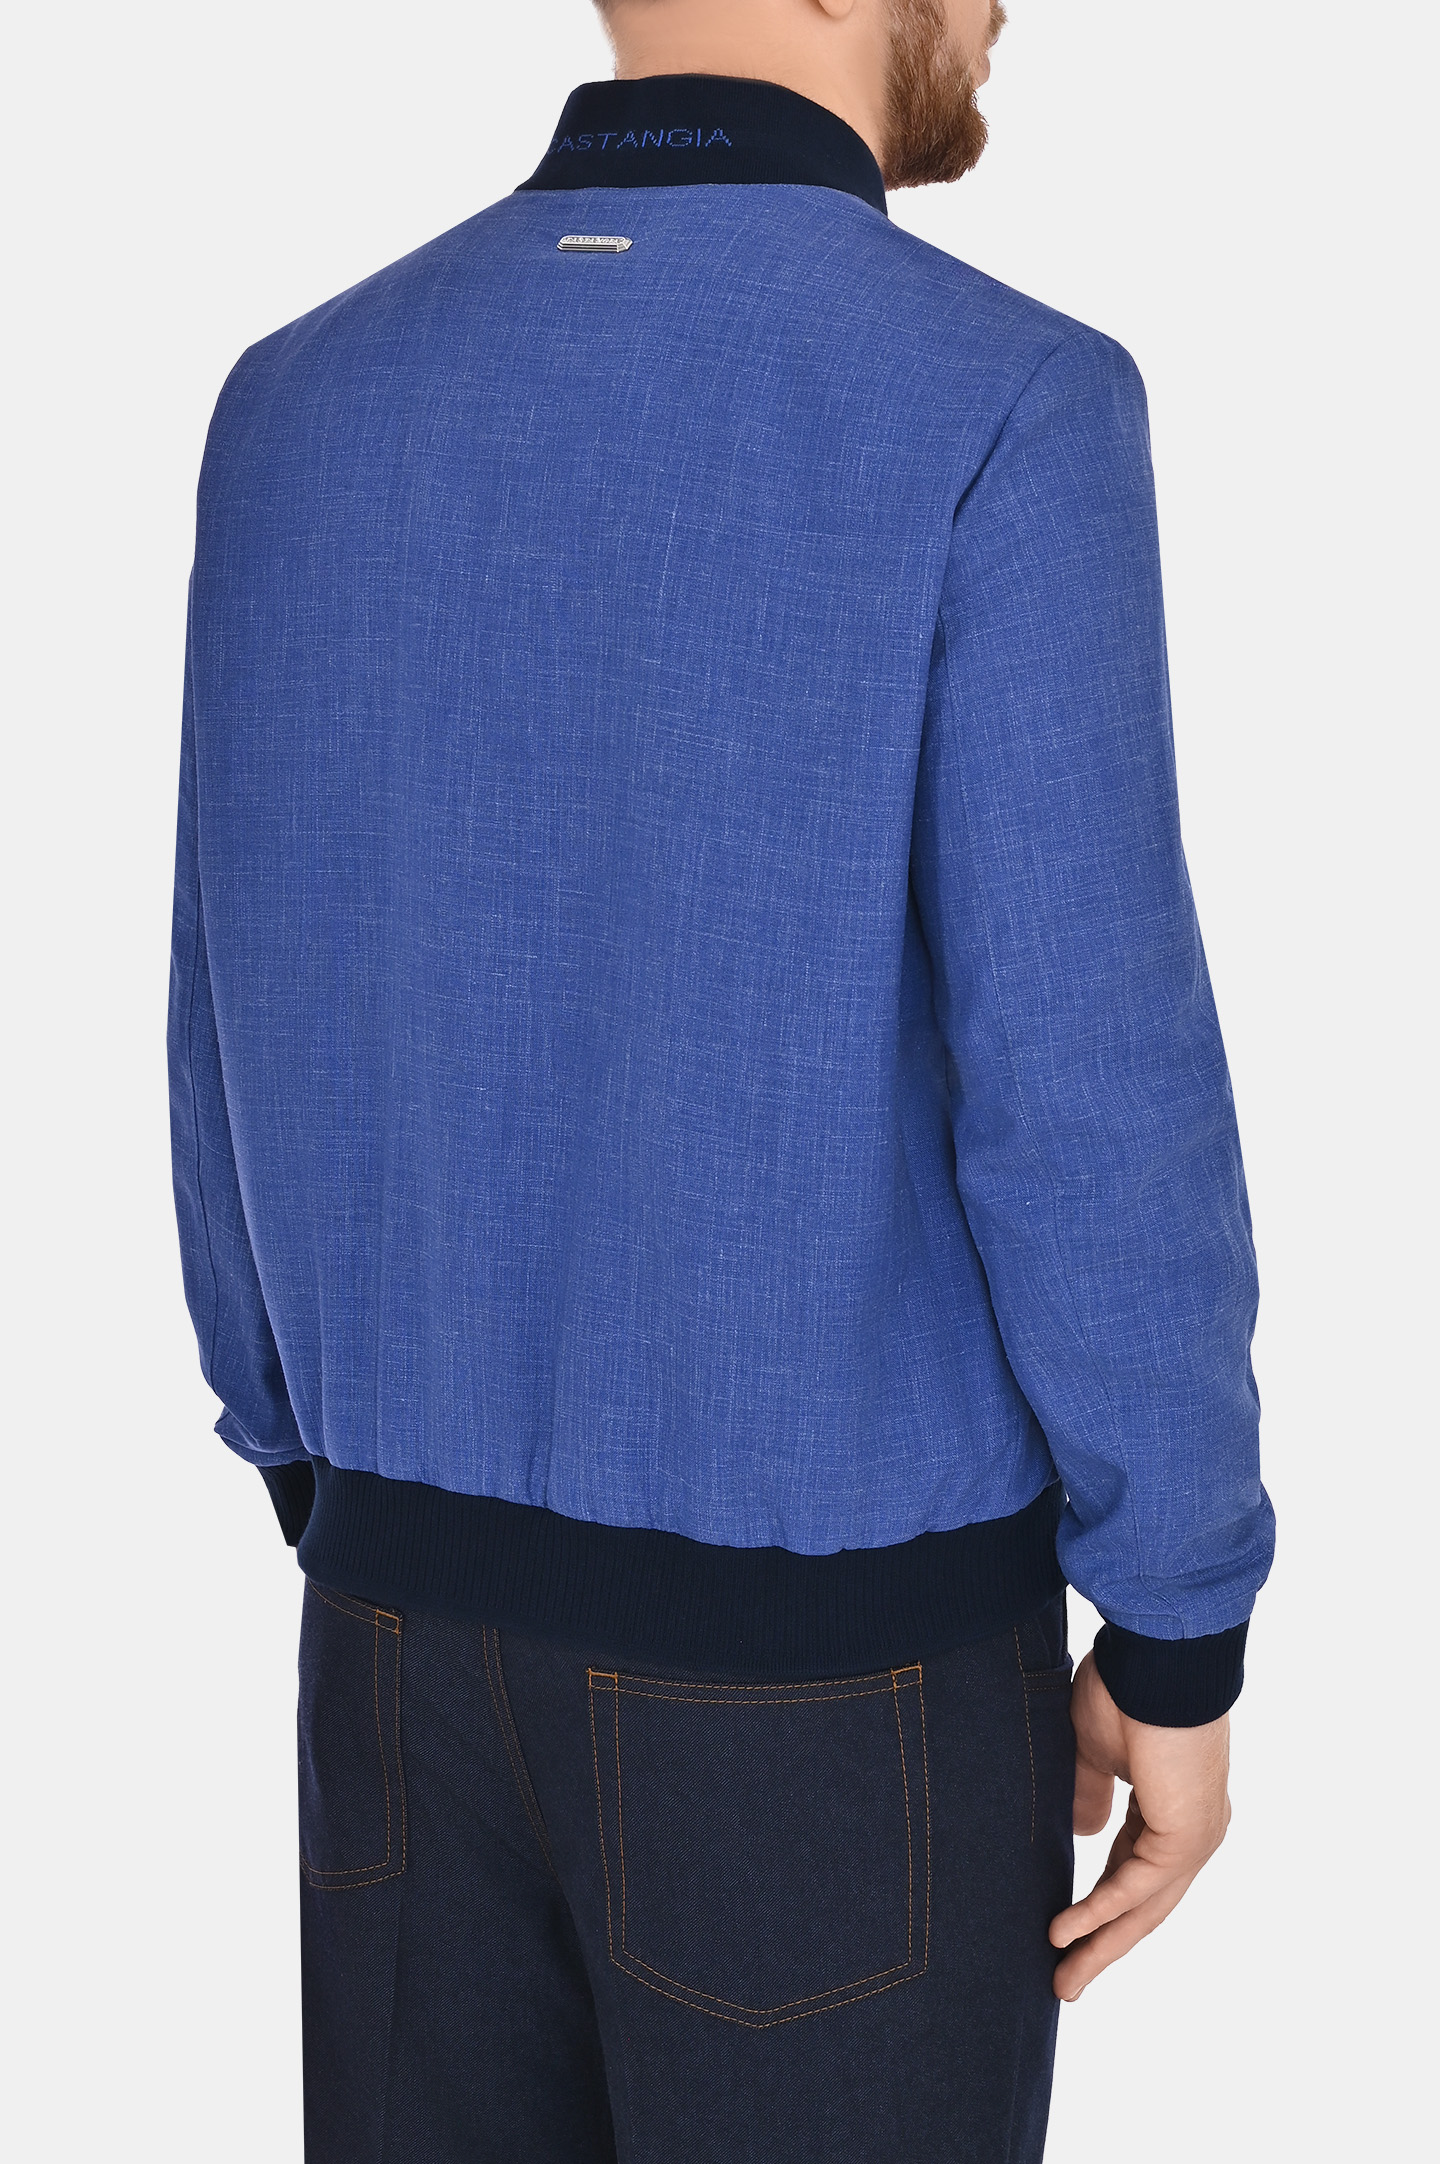 Куртка CASTANGIA SA21, цвет: Голубой, Мужской